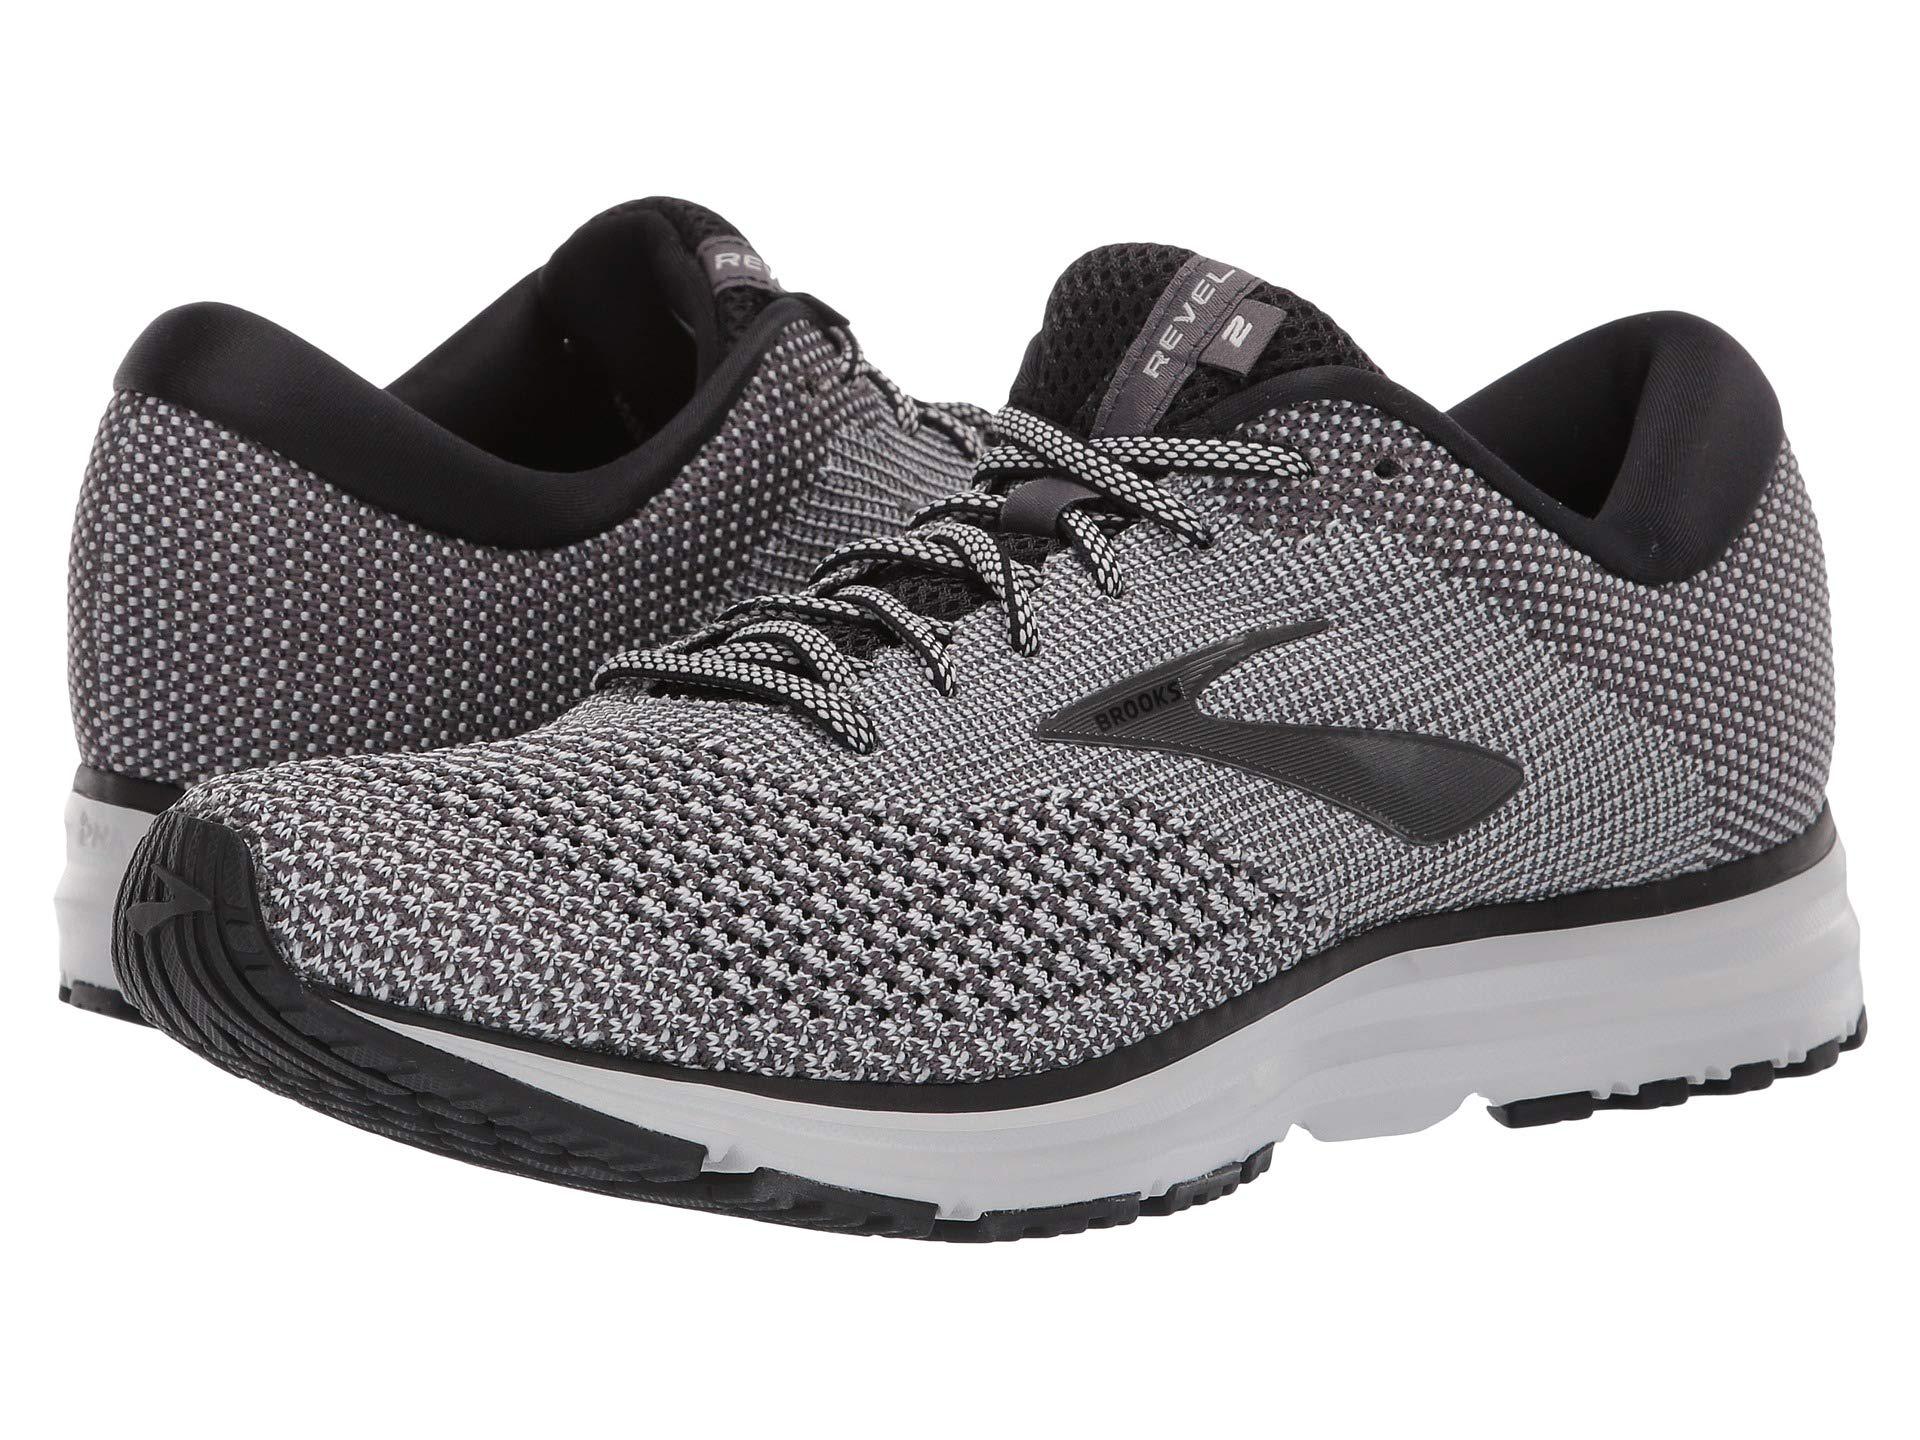 Lyst - Brooks Revel 2 (white/grey/black) Men's Running Shoes in Black ...